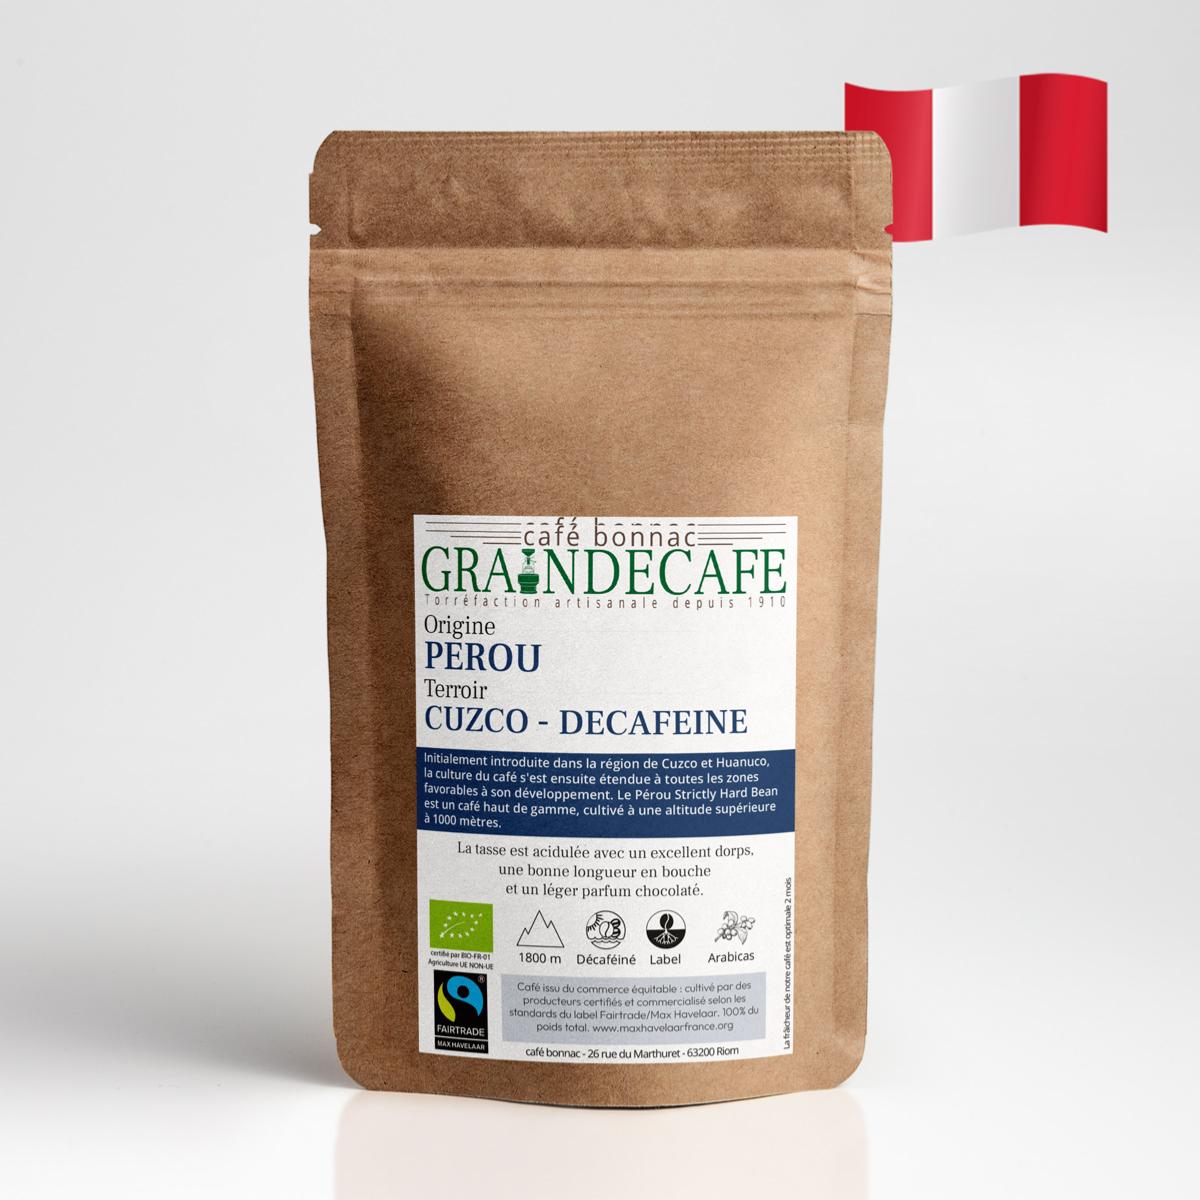 Café grain bio 100% arabica - Décaféiné